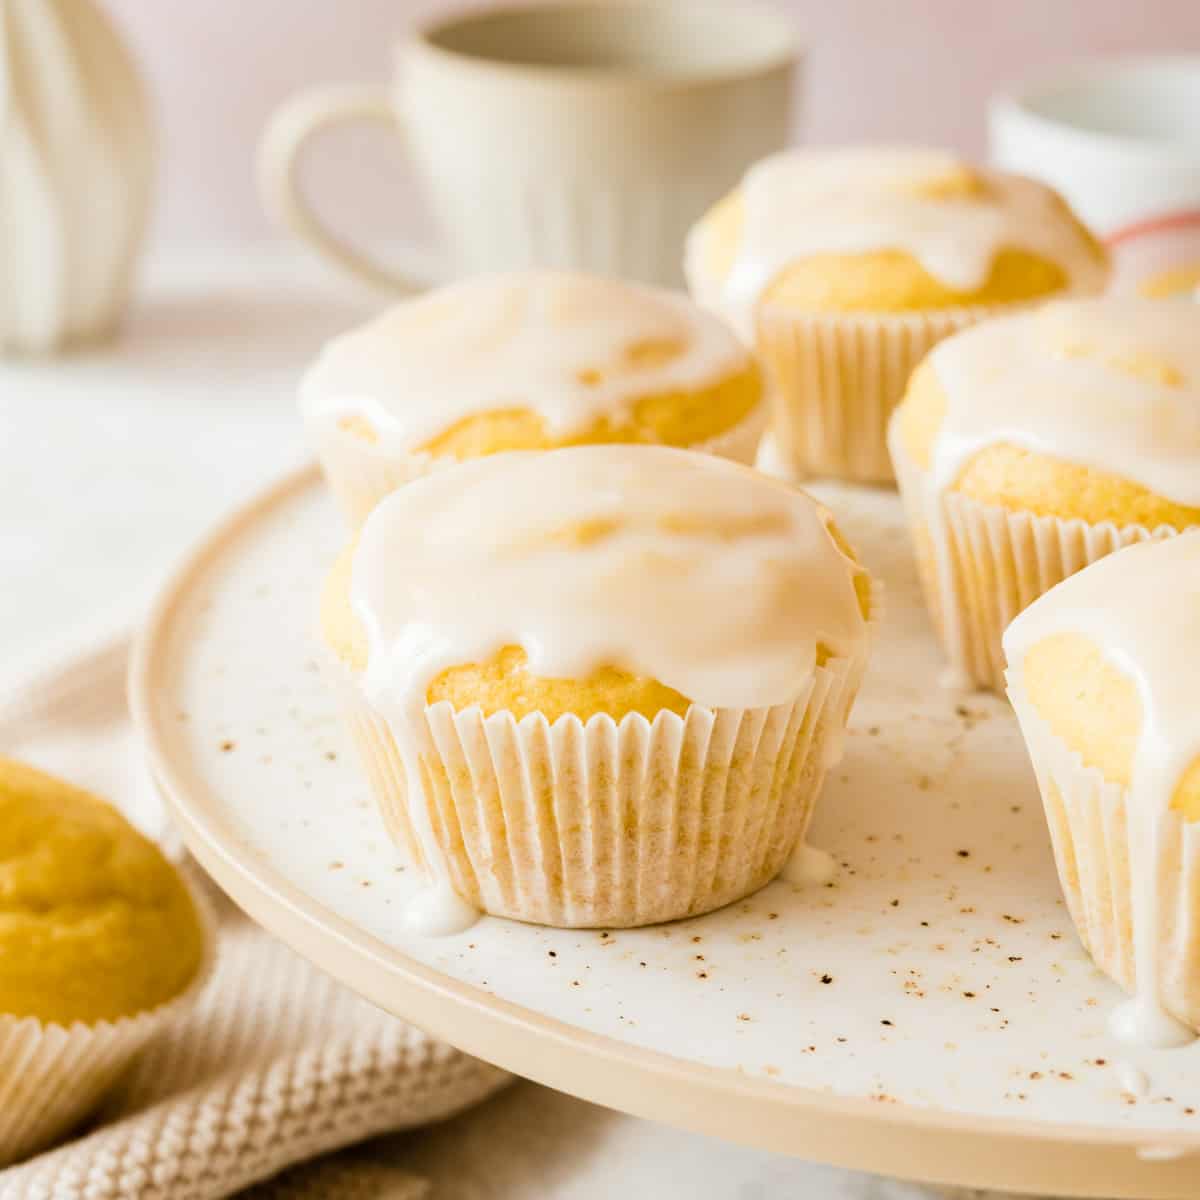 Vegane fluffige & saftige Muffins – super einfaches Basisrezept